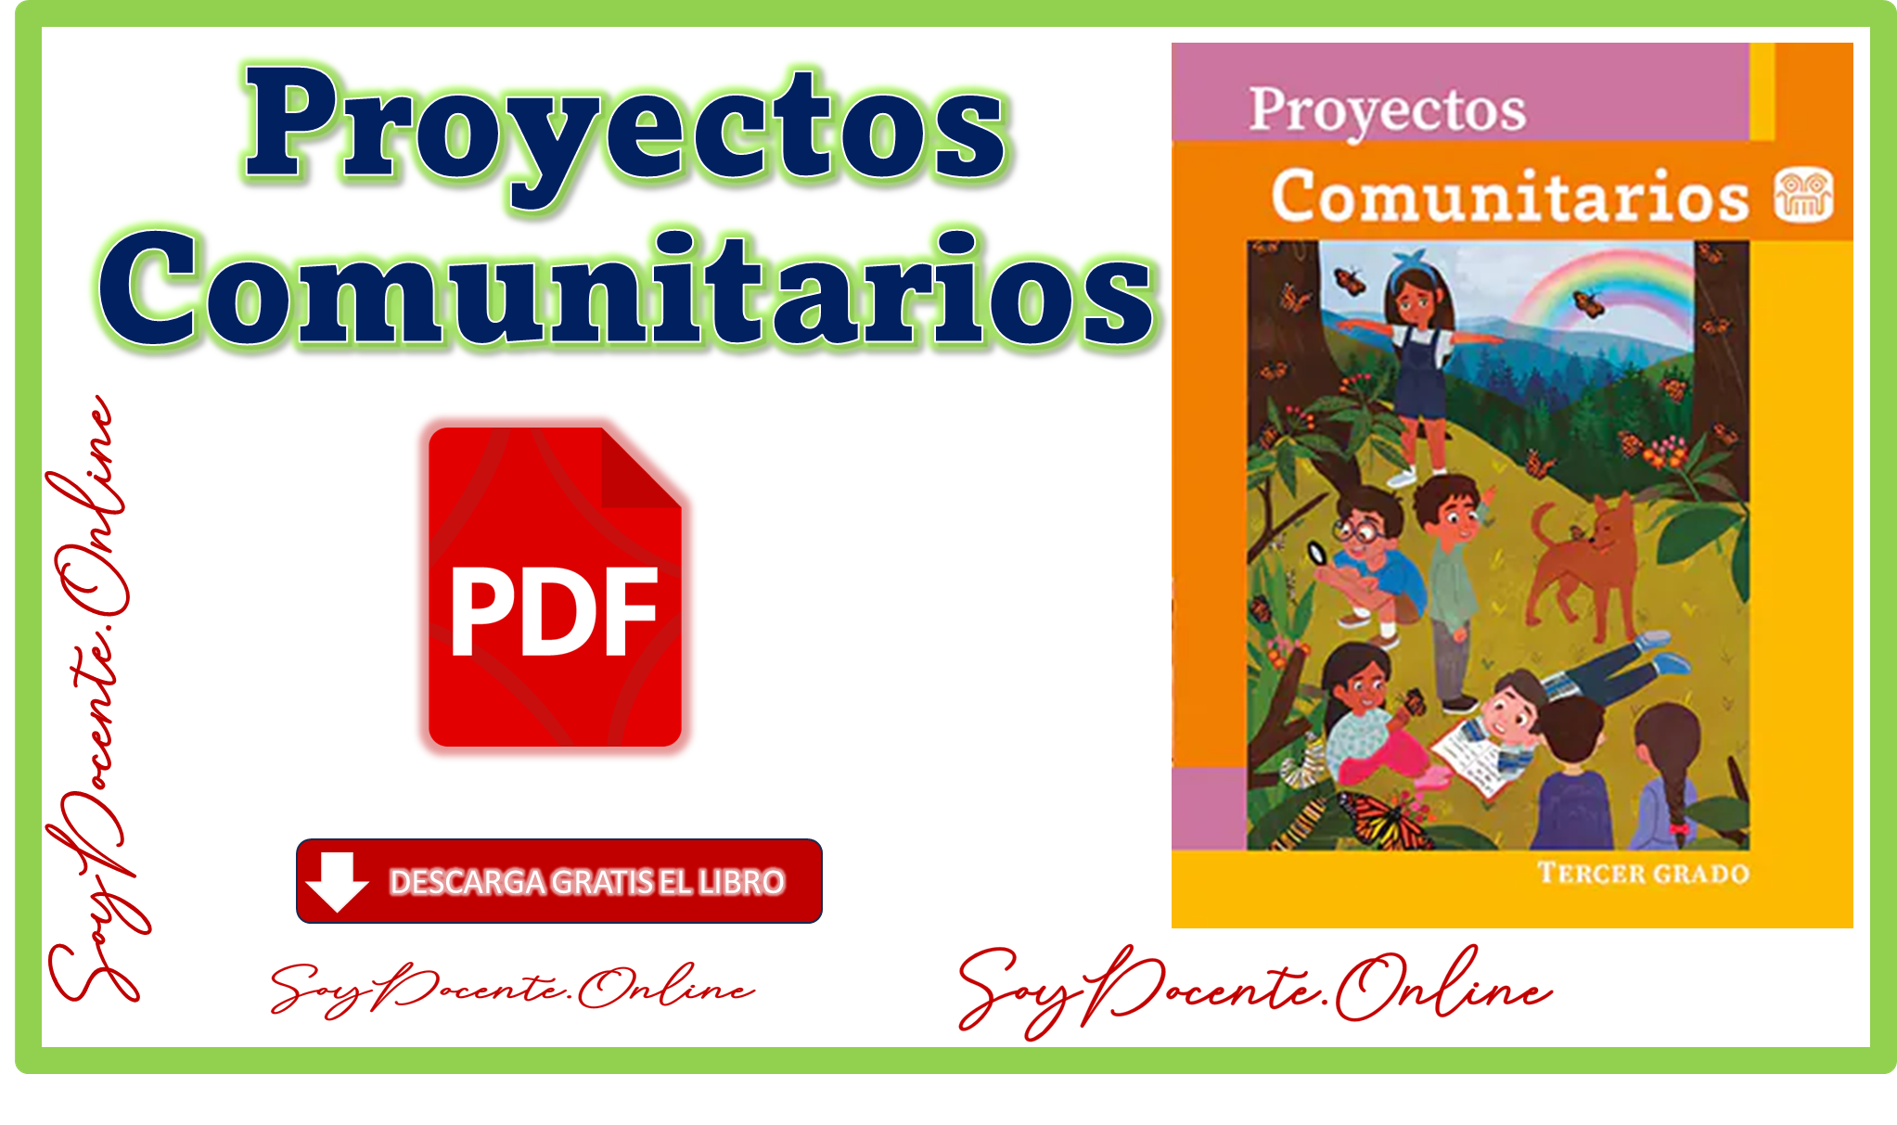 Descarga gratis el Libro de Proyectos Comunitarios tercer grado de Primaria obra de la SEP, distribuido por la CONALITEG en PDF